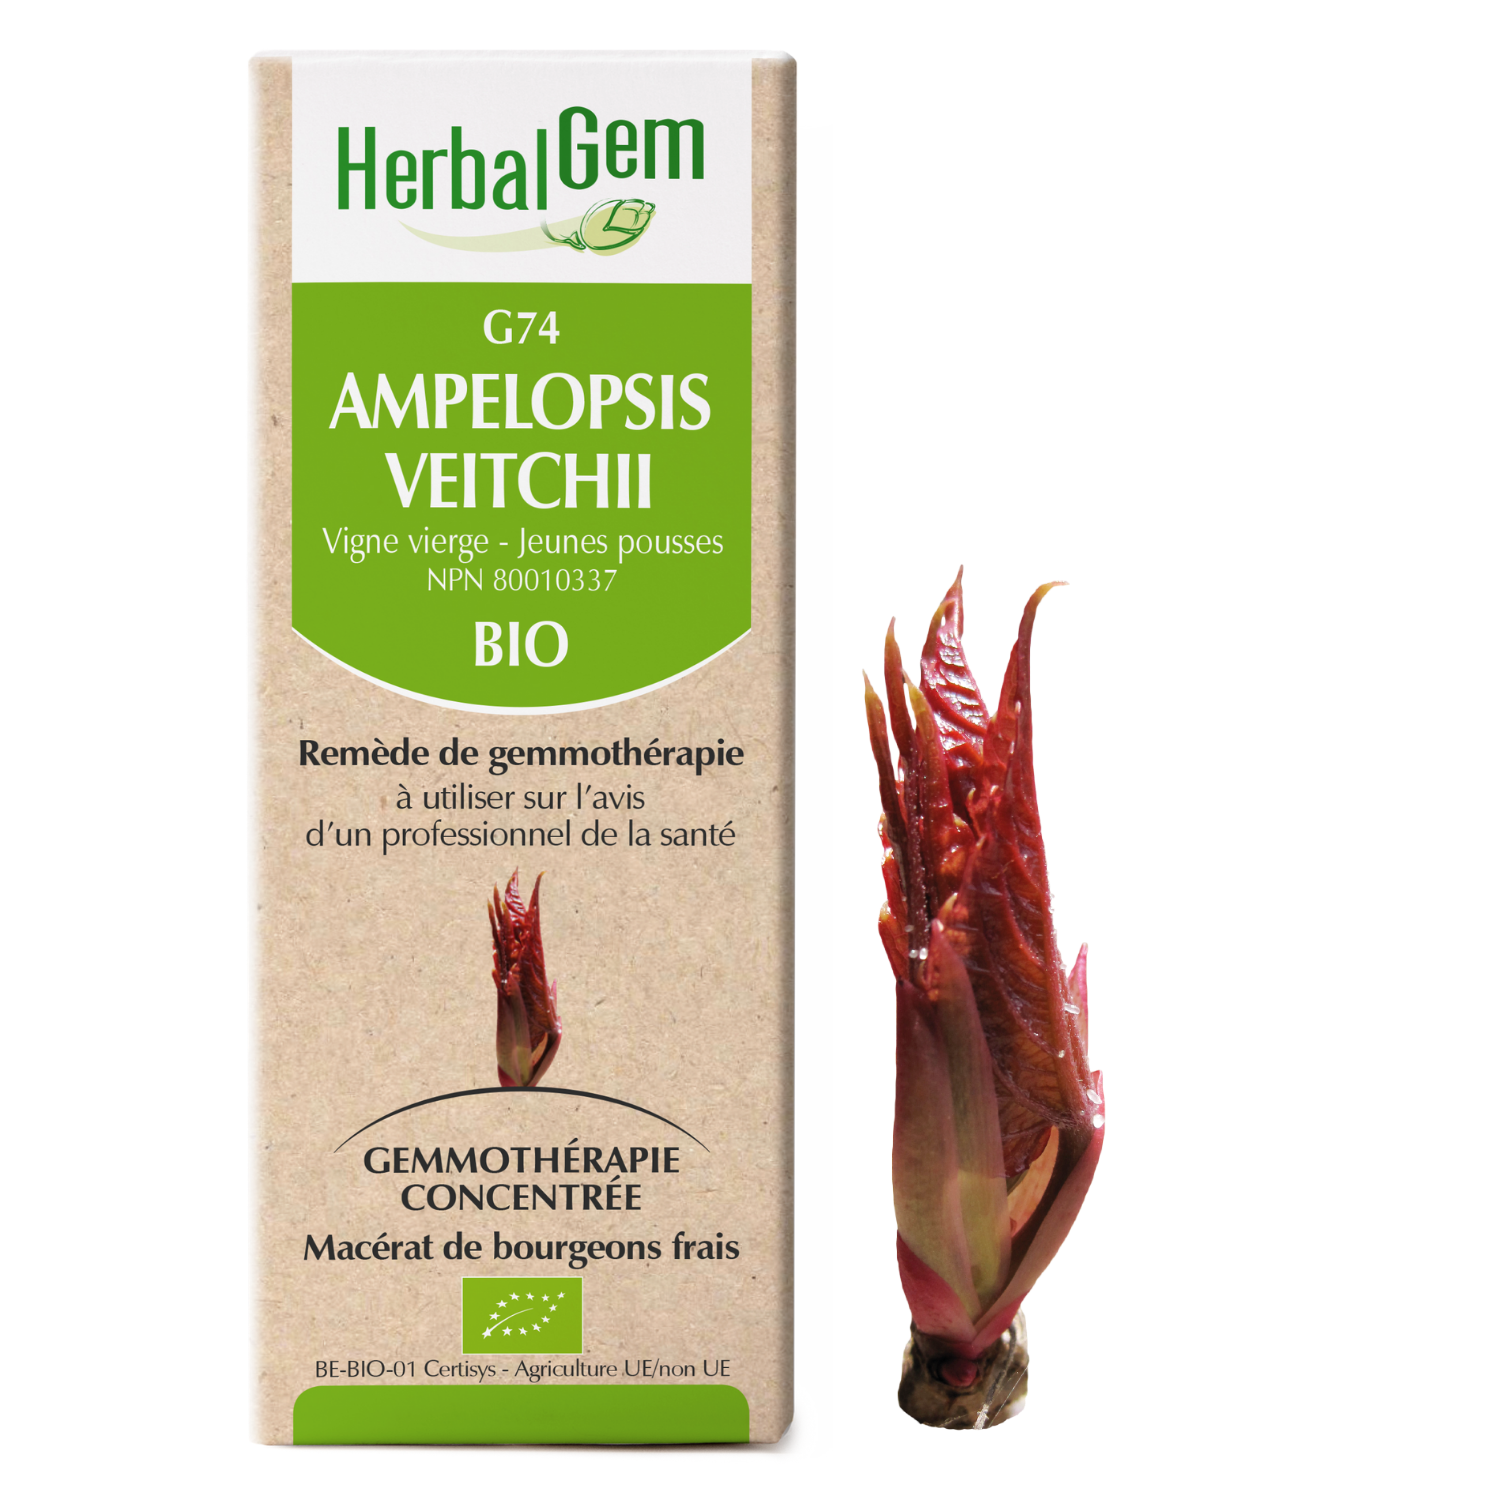 Ampelopsis veitchii (Vigne vierge) G74